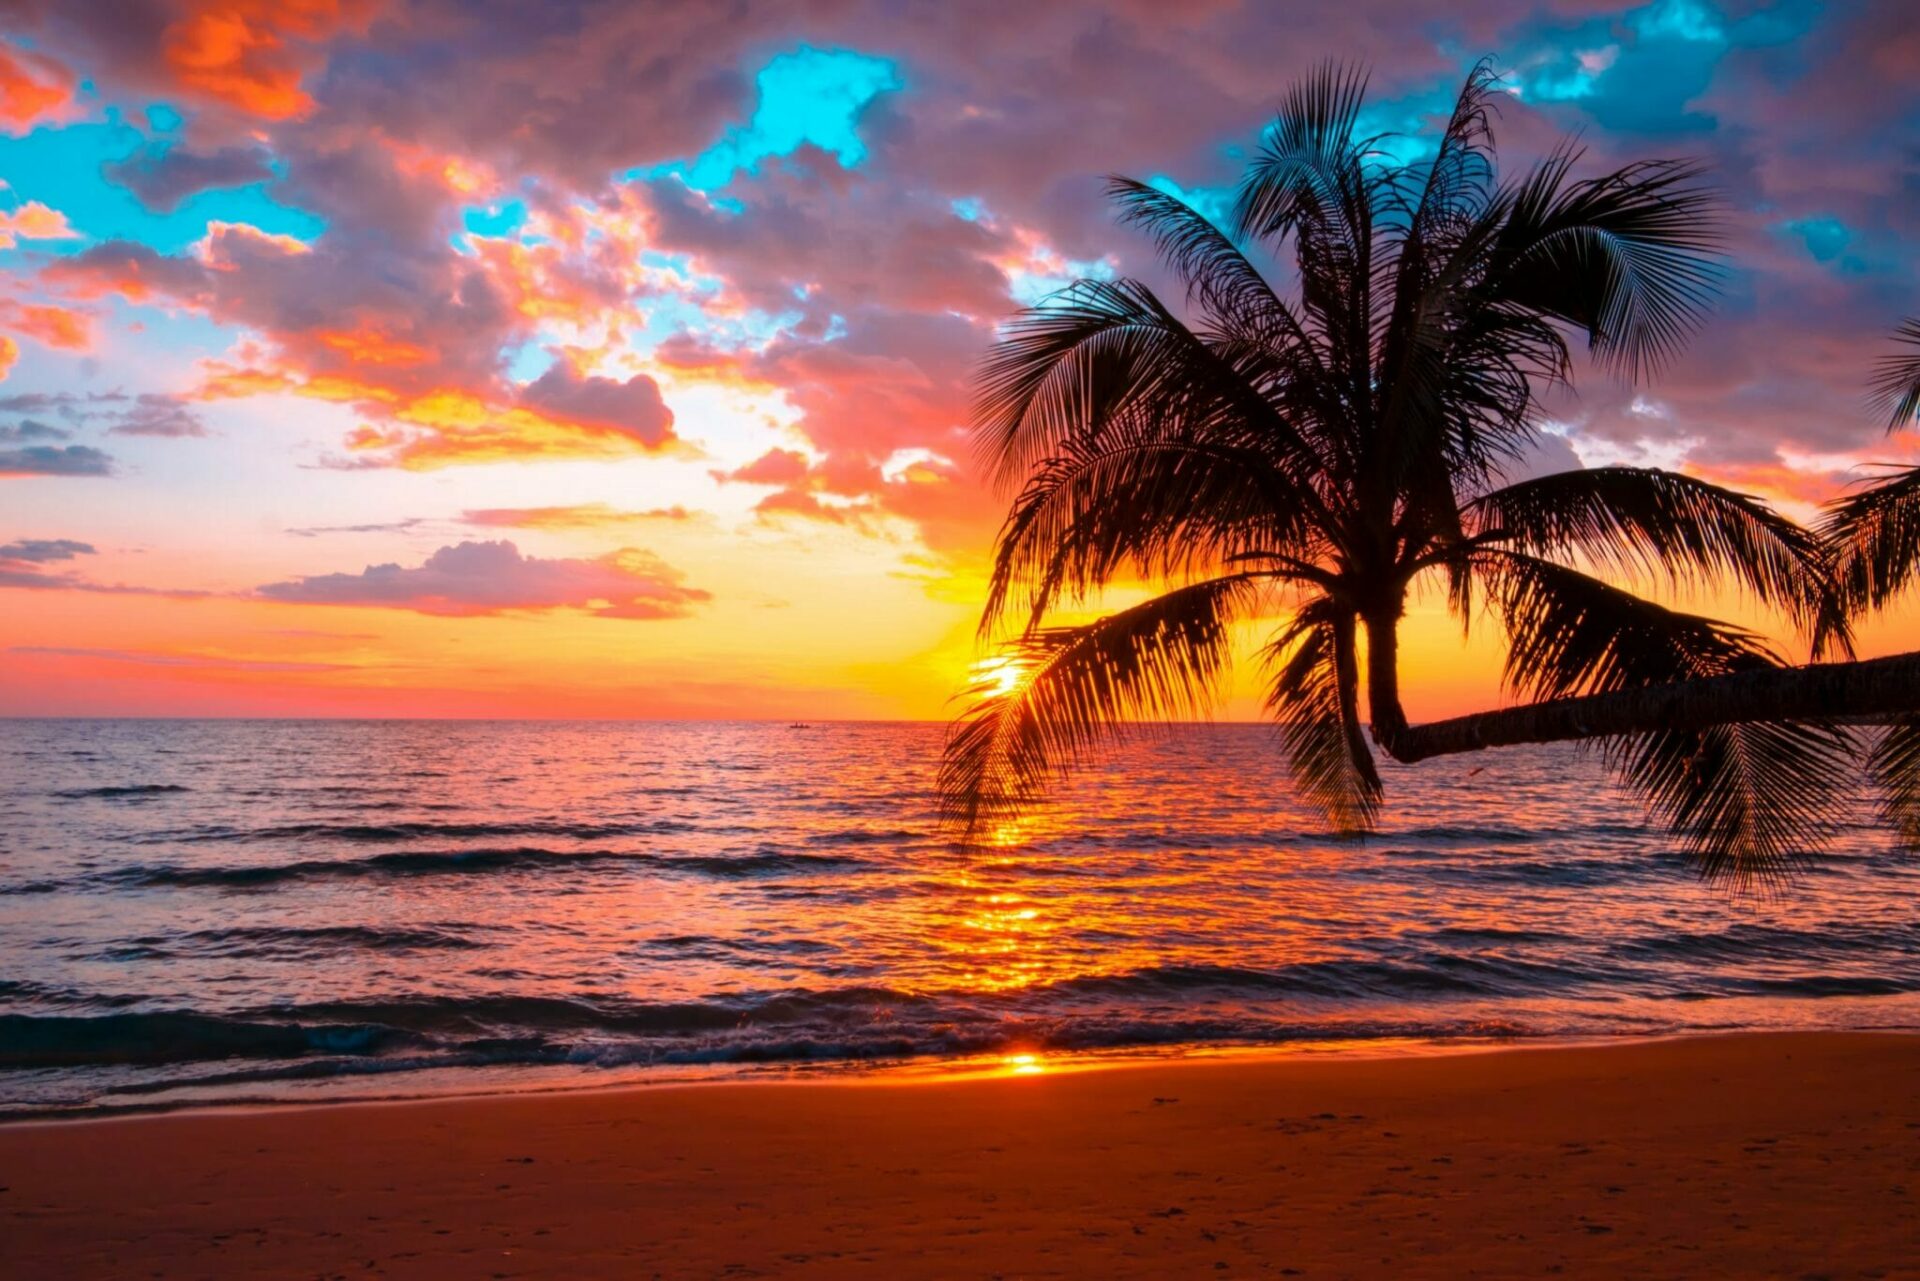 Sansibar Urlaub buchen bei REISEBÜRO Wache Erfurt; im Bild: Sonnenuntergang über dem Meer, Welle trifft auf Strand, im Vordergrund eine durchs Gegenlicht schwarz wirkende Palme